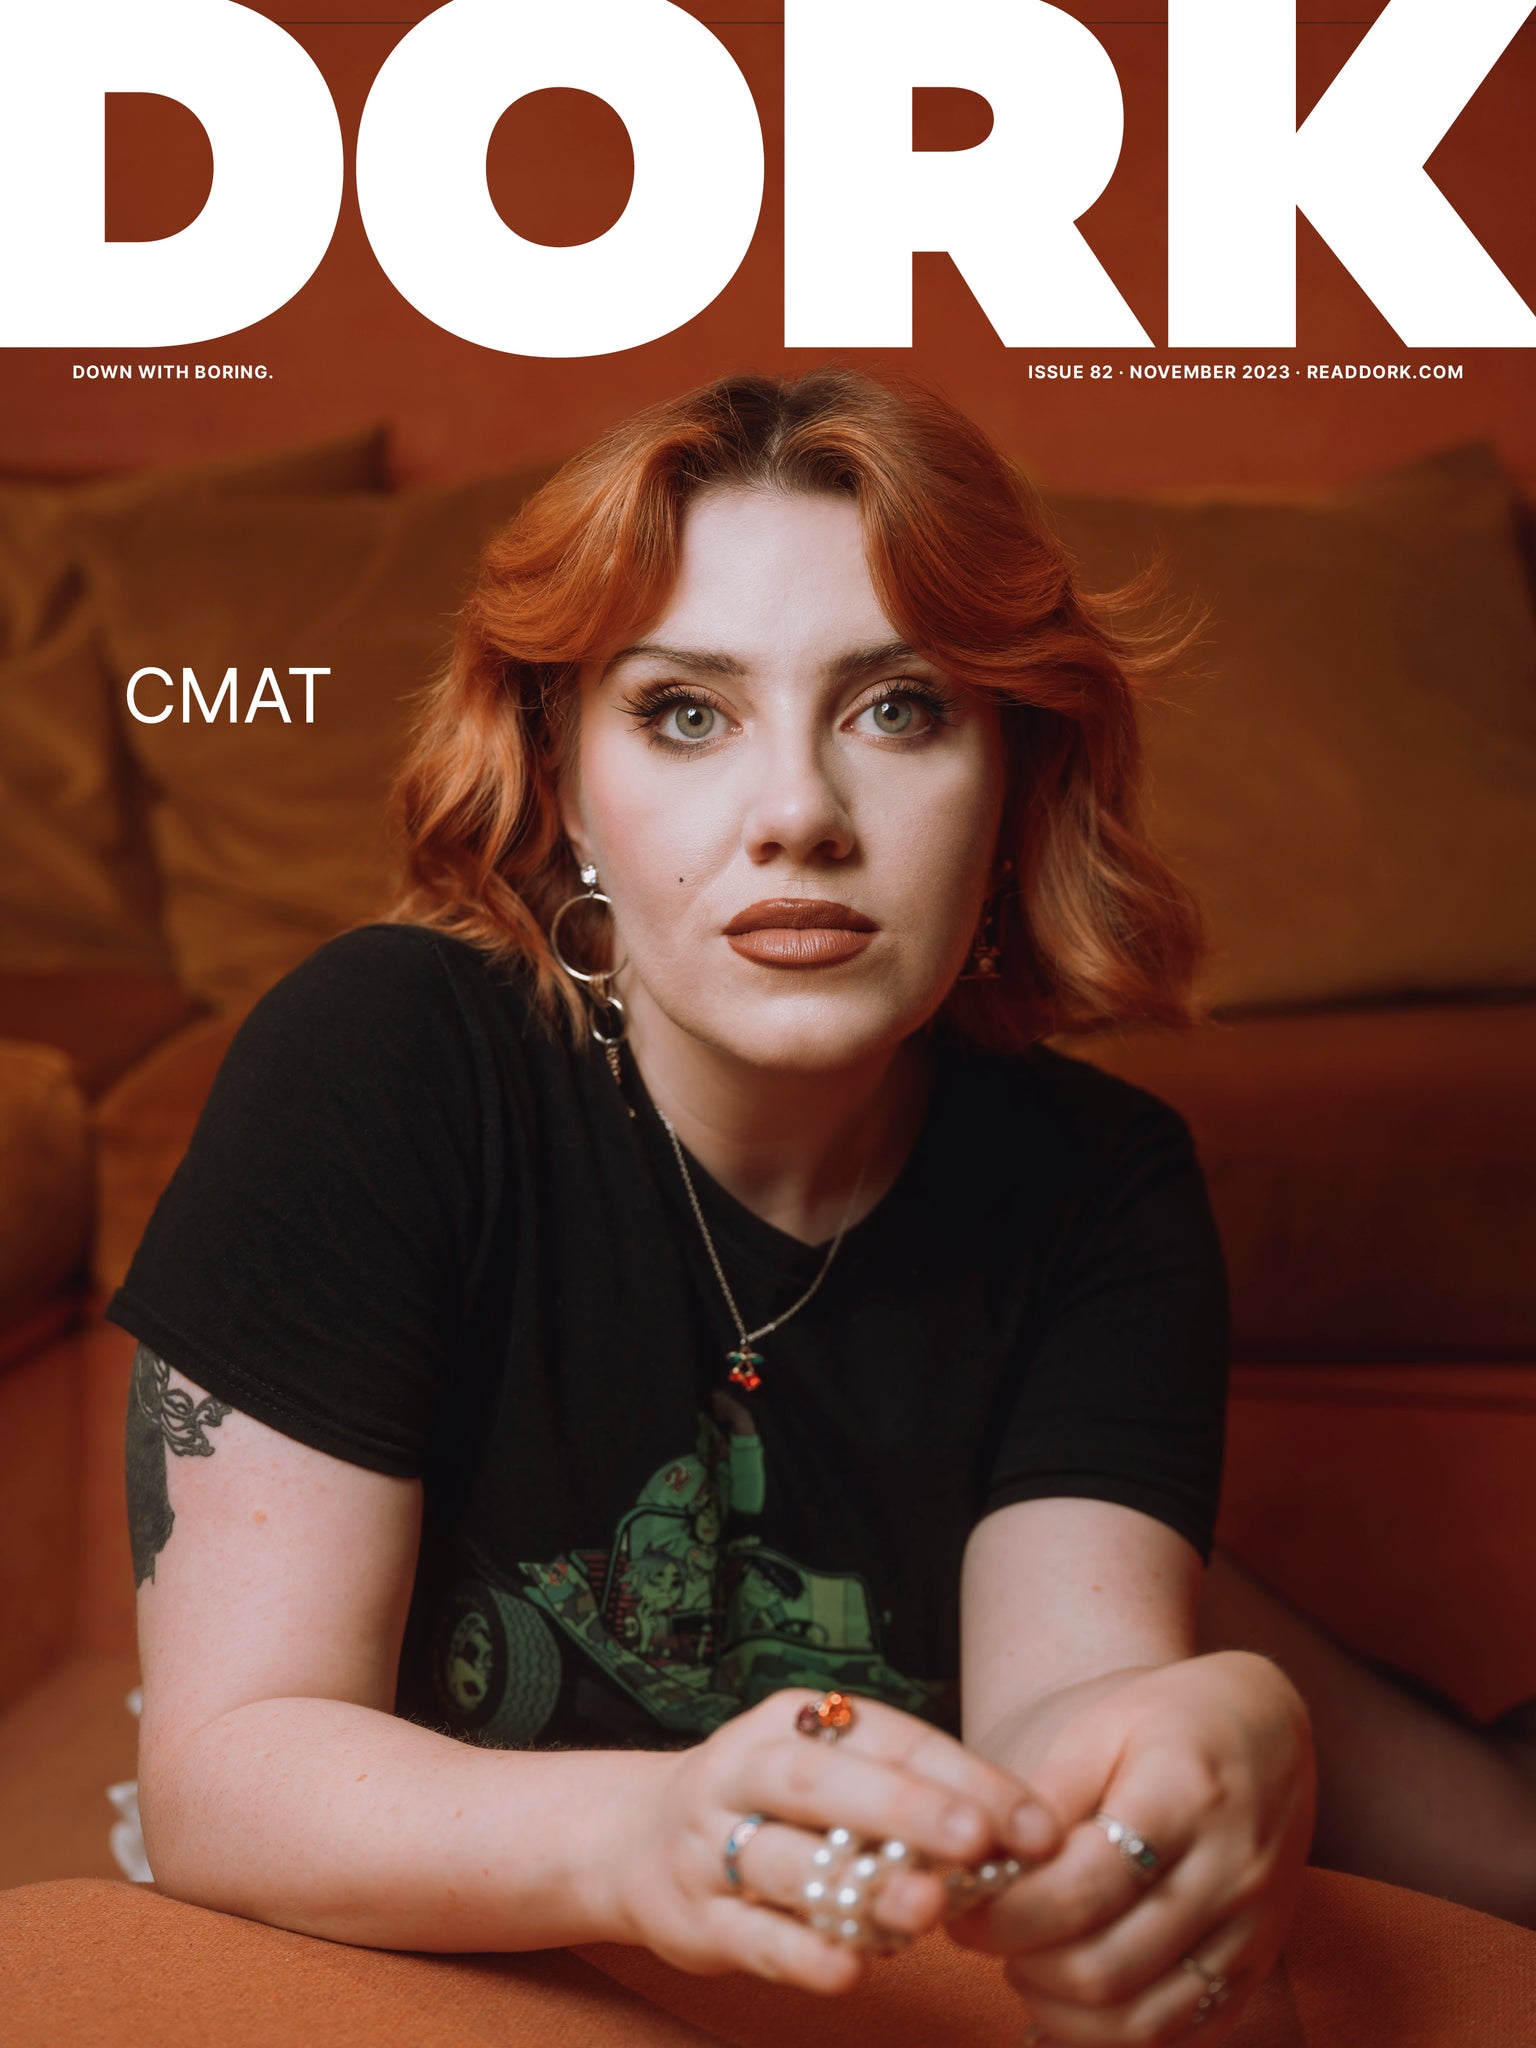 Dork, November 2023 (CMAT cover)